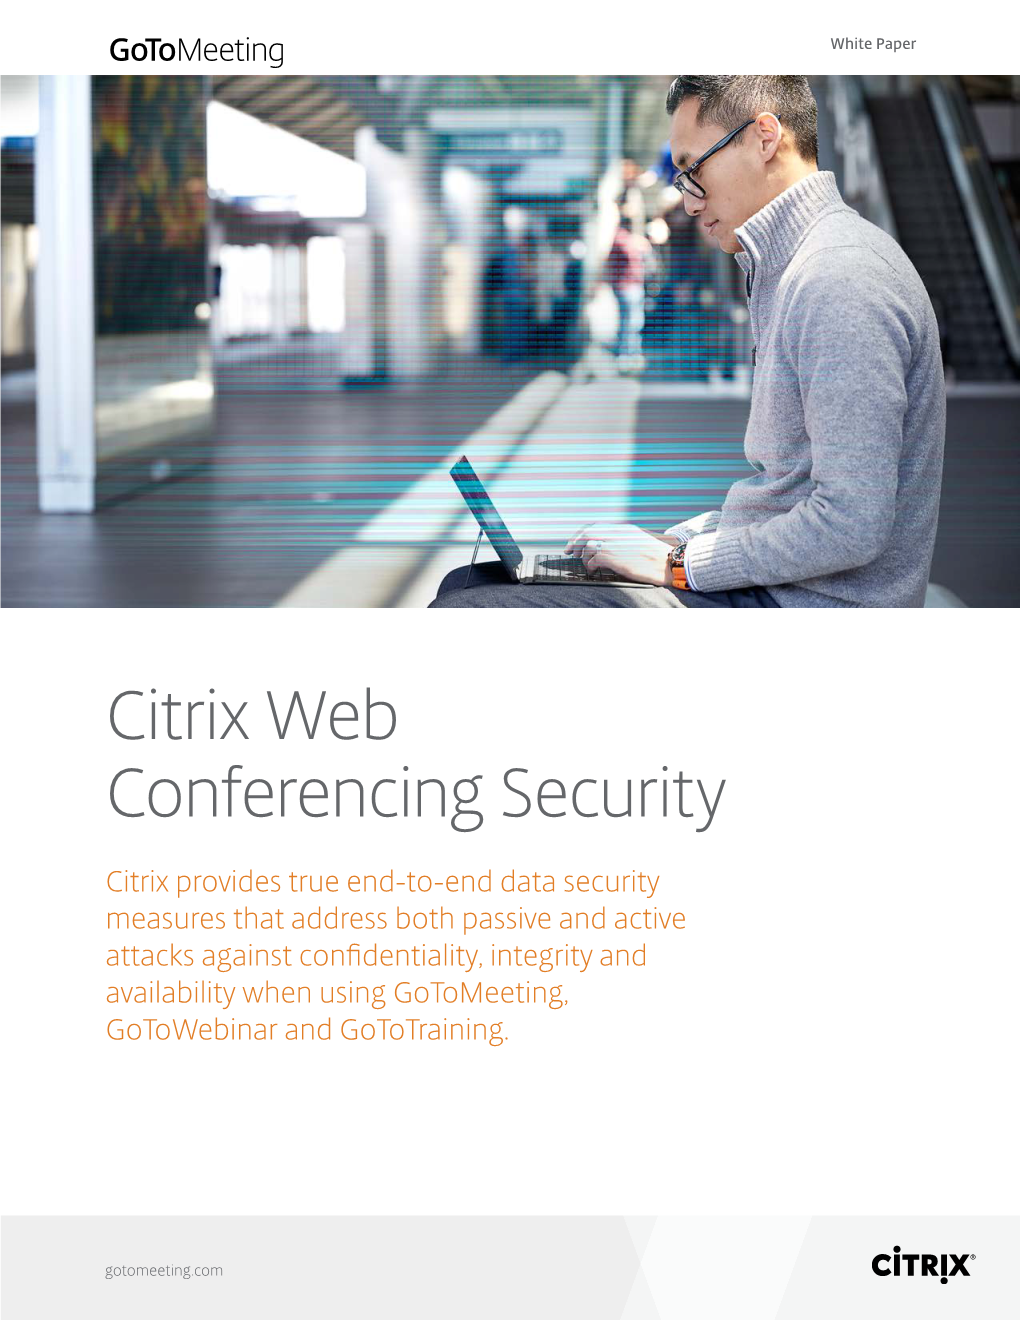 Citrix Web Conferencing Security